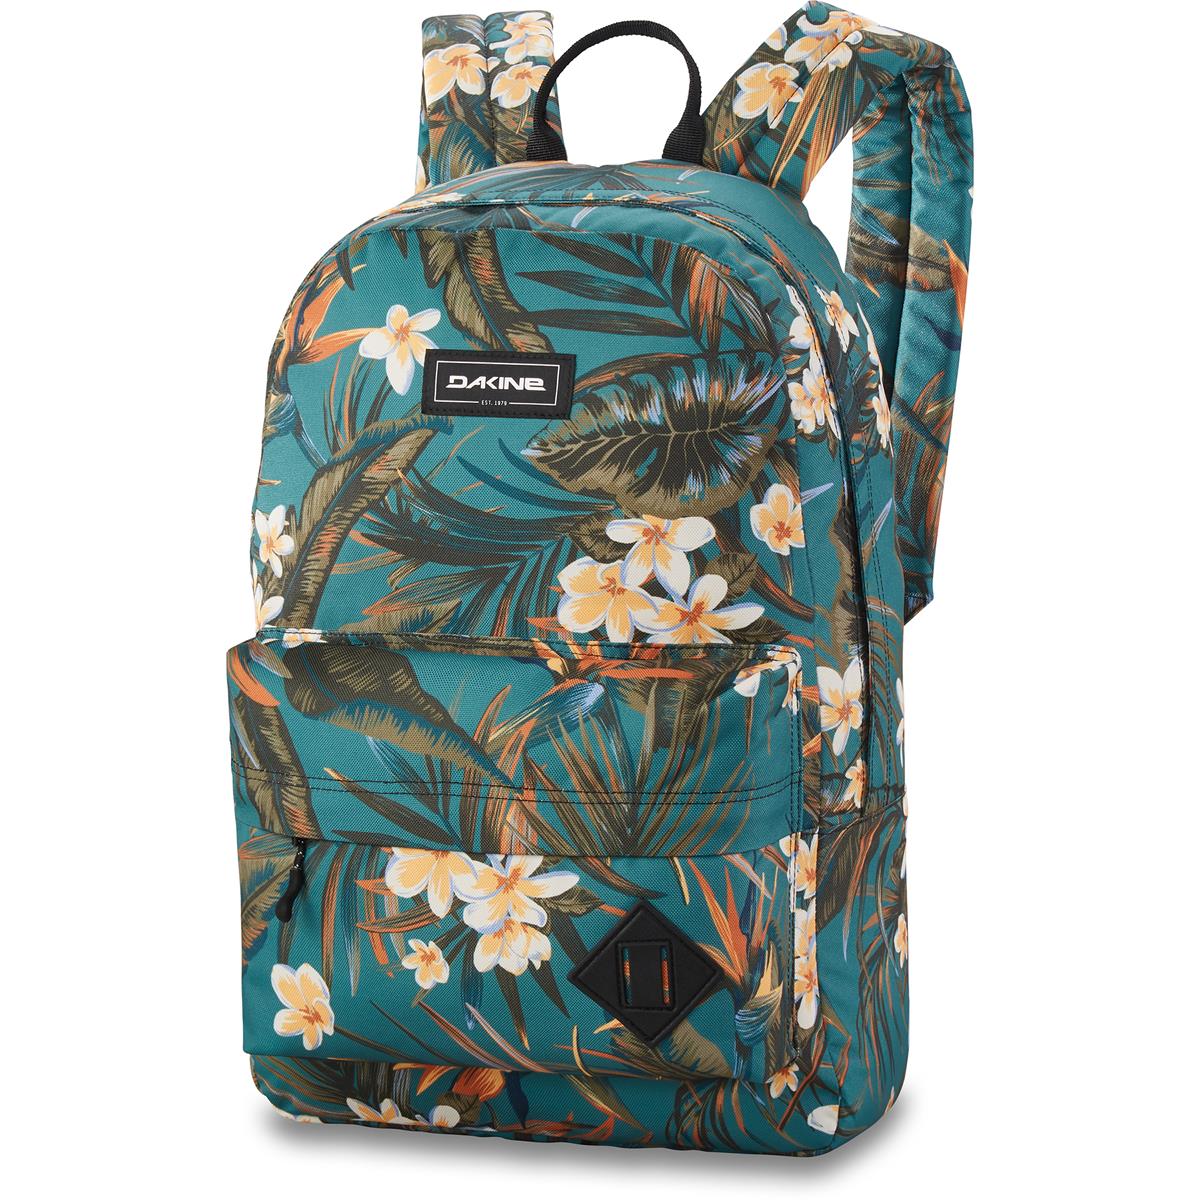 Cadeau Migratie ethisch Dakine Backpack 365 Pack Emerald Tropic | Maciag Offroad